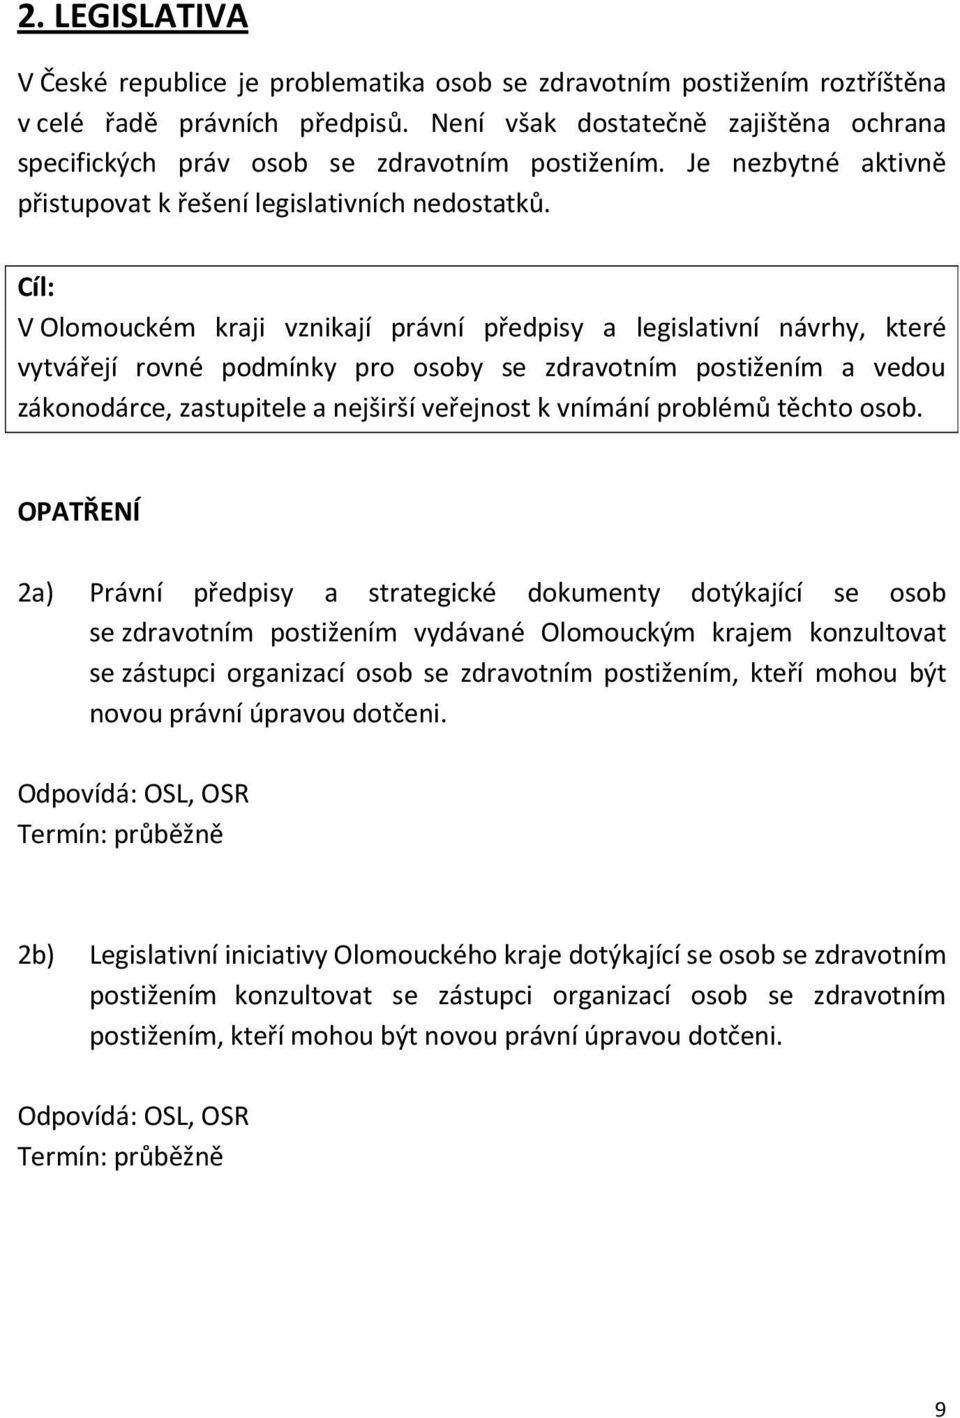 Cíl: V Olomouckém kraji vznikají právní předpisy a legislativní návrhy, které vytvářejí rovné podmínky pro osoby se zdravotním postižením a vedou zákonodárce, zastupitele a nejširší veřejnost k